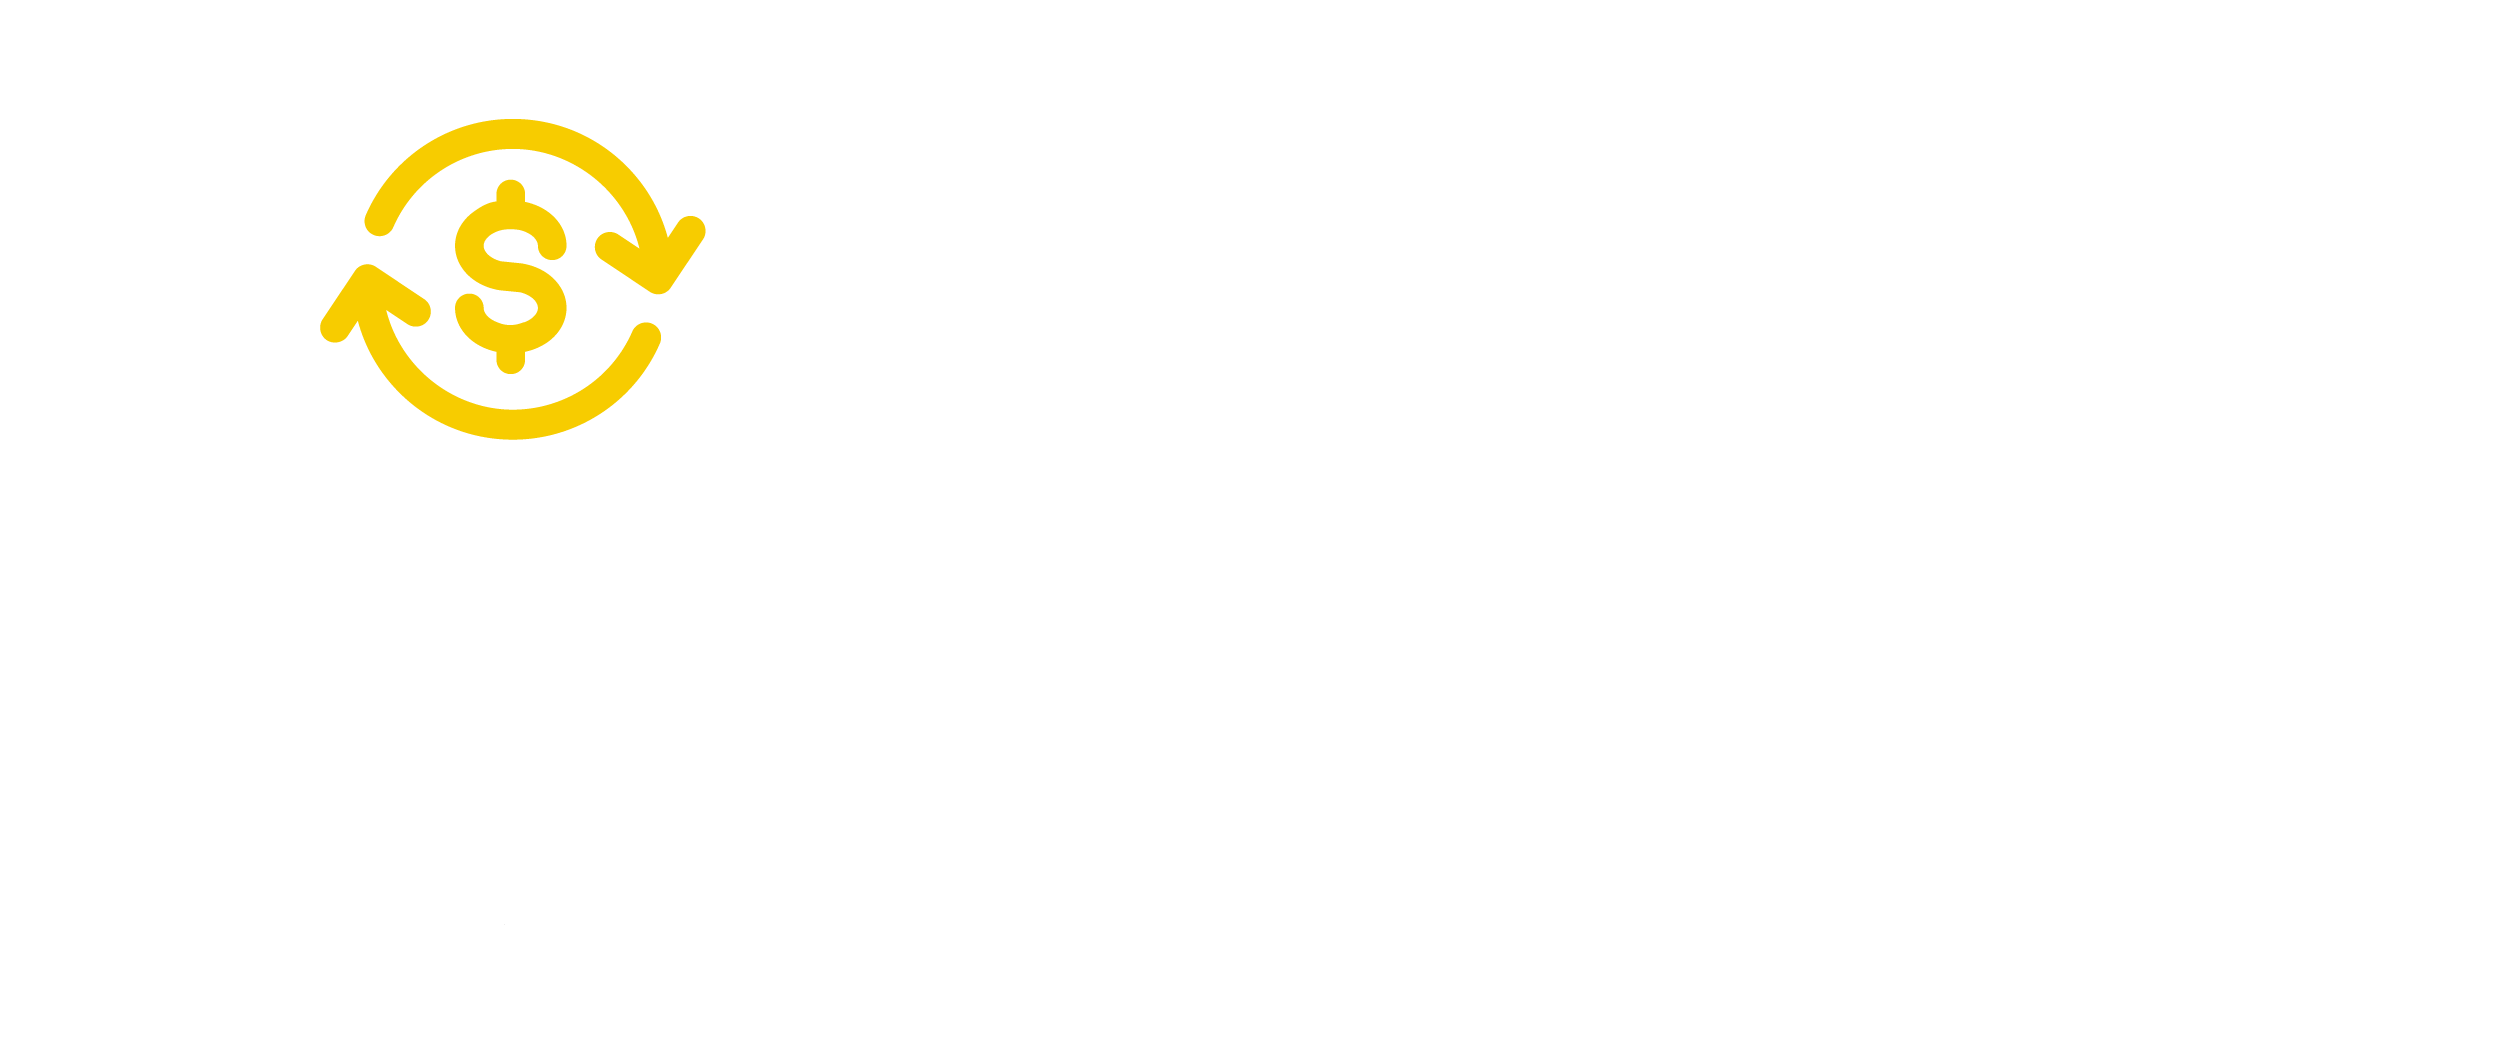 Inclusión y educación financiera 